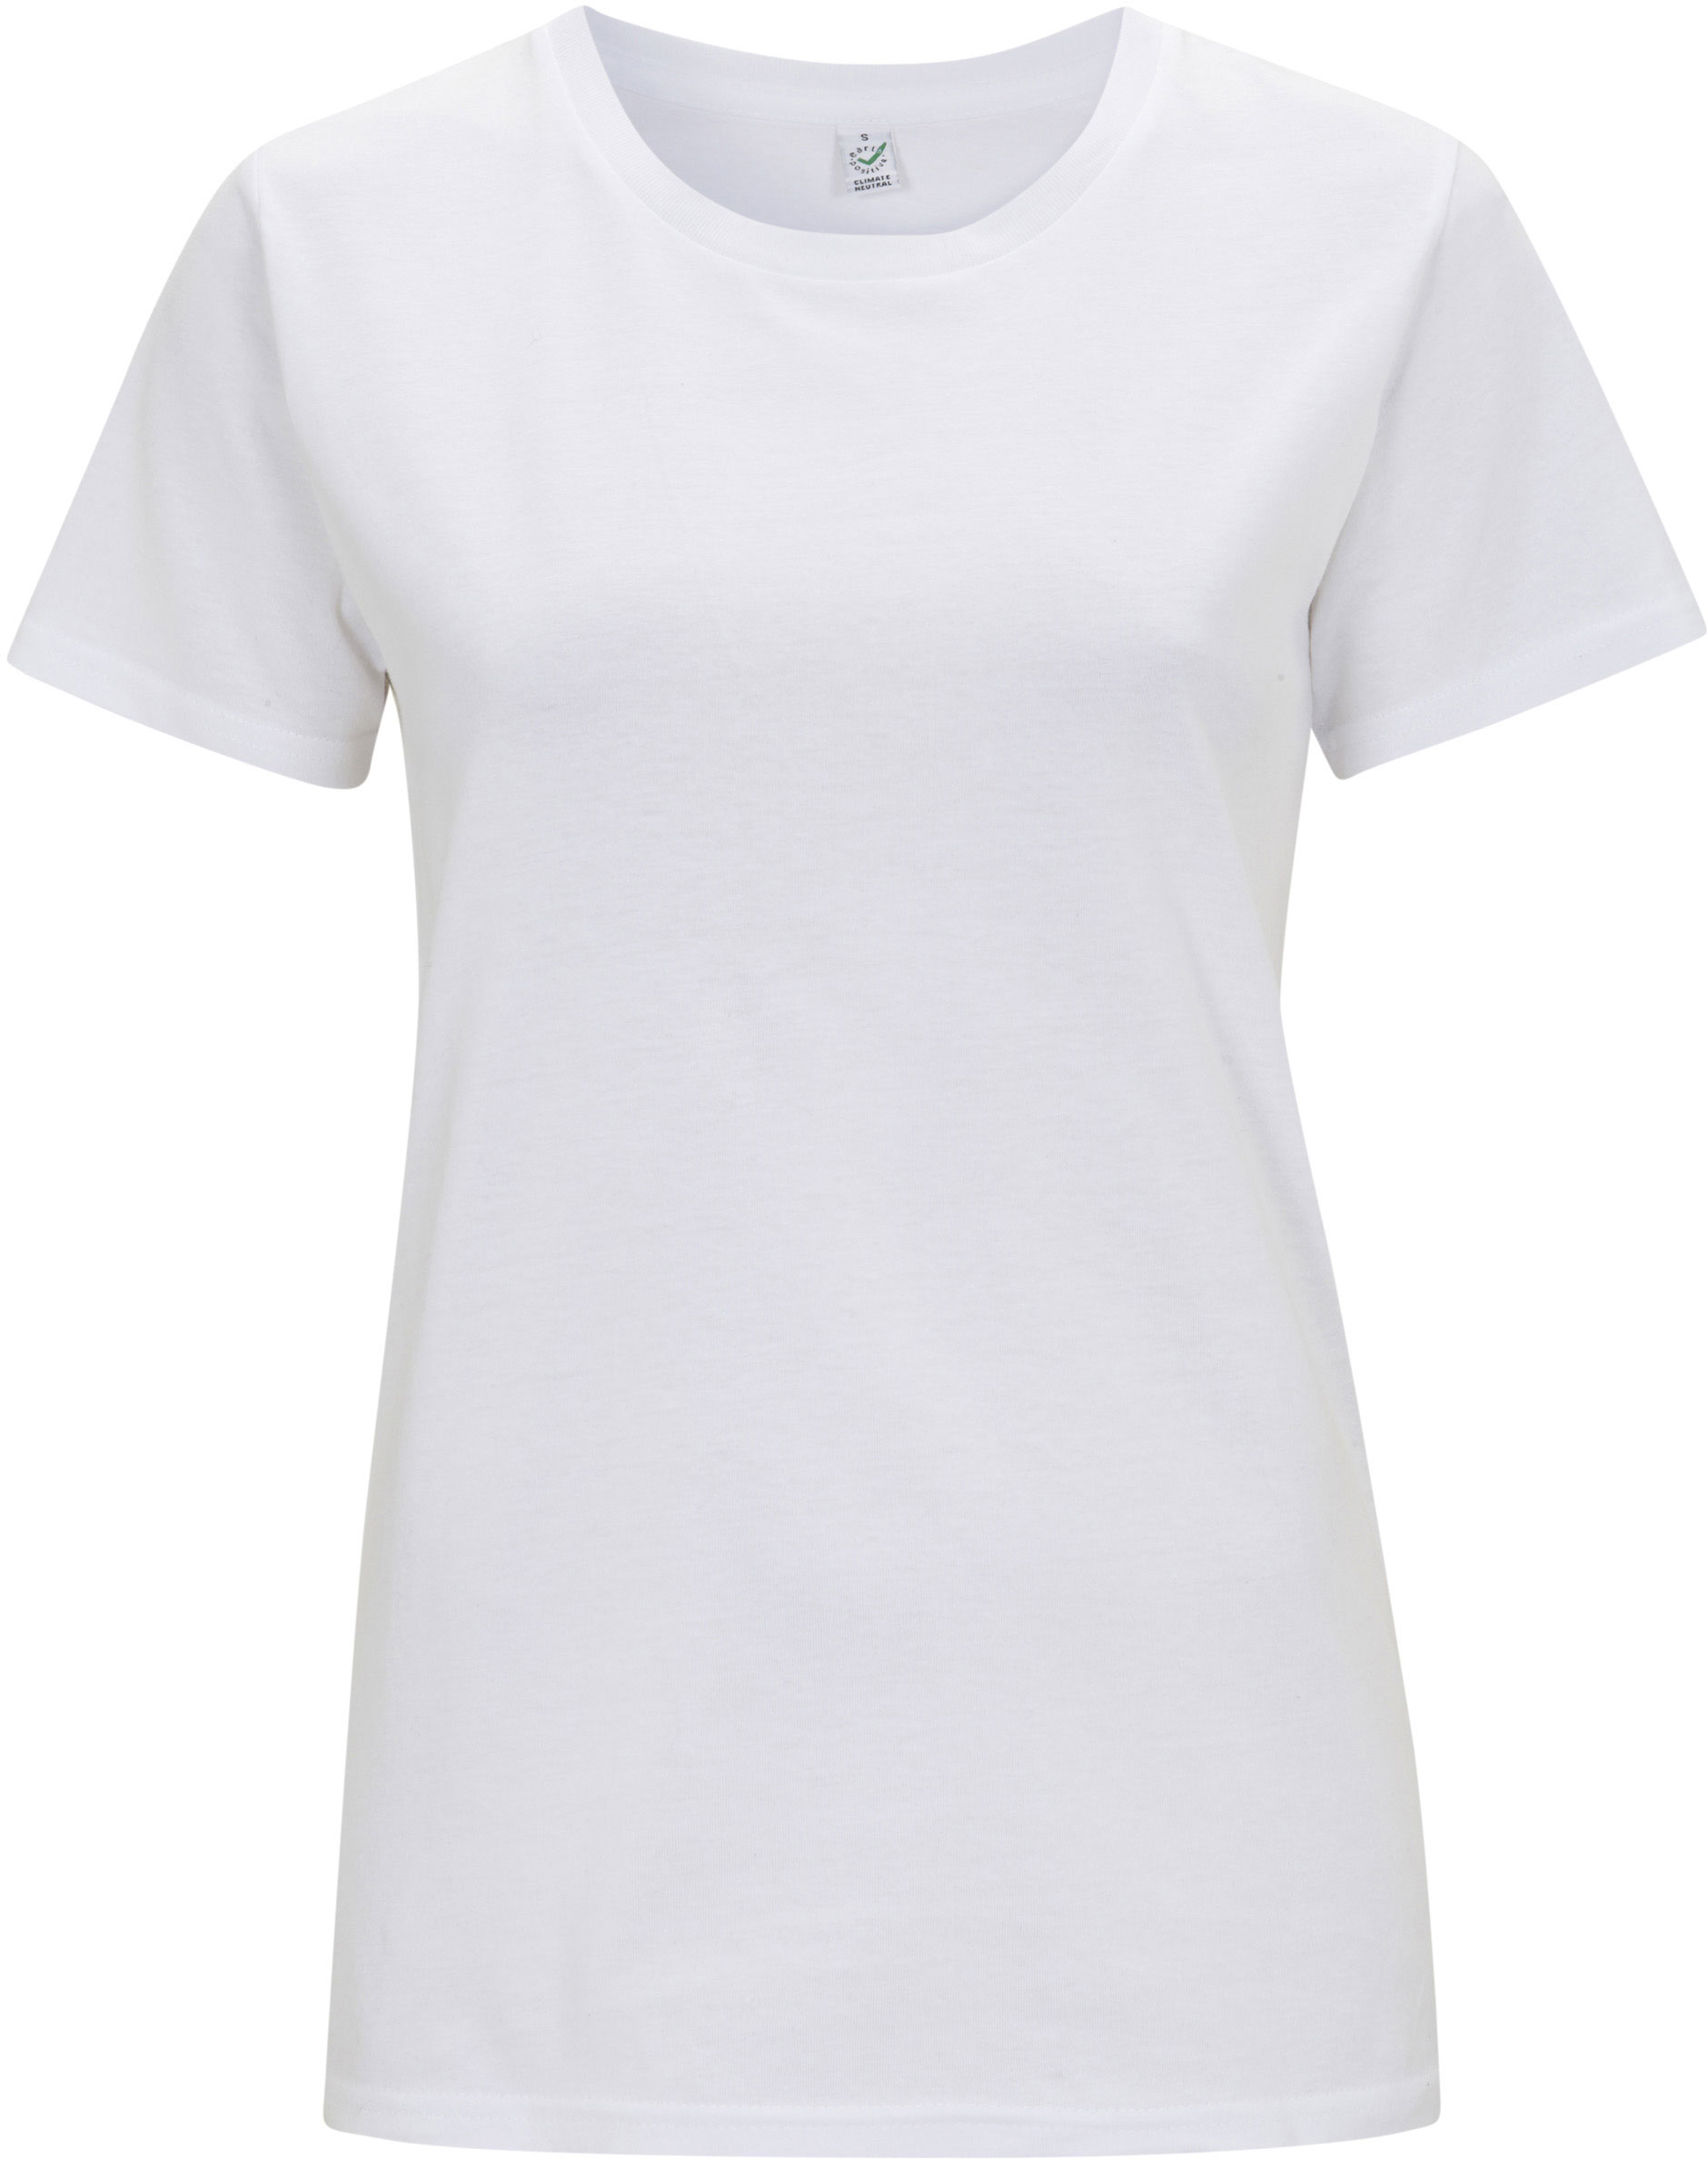 Weißes Damen Shirt mit geradem Schnitt - Biobaumwolle